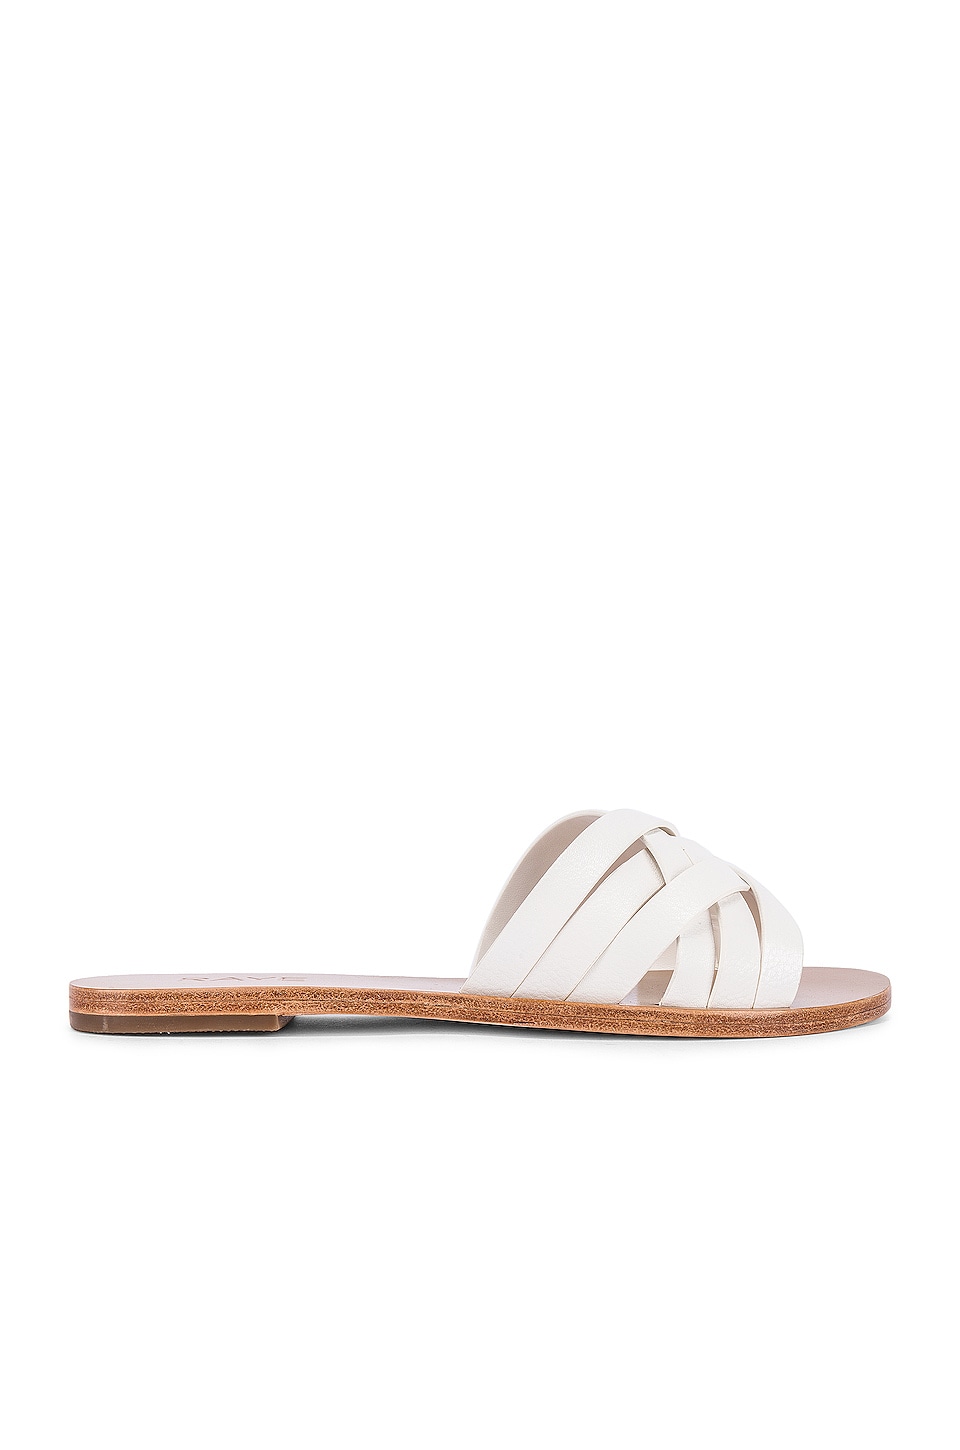 RAYE Barefoot Sandal in White | REVOLVE